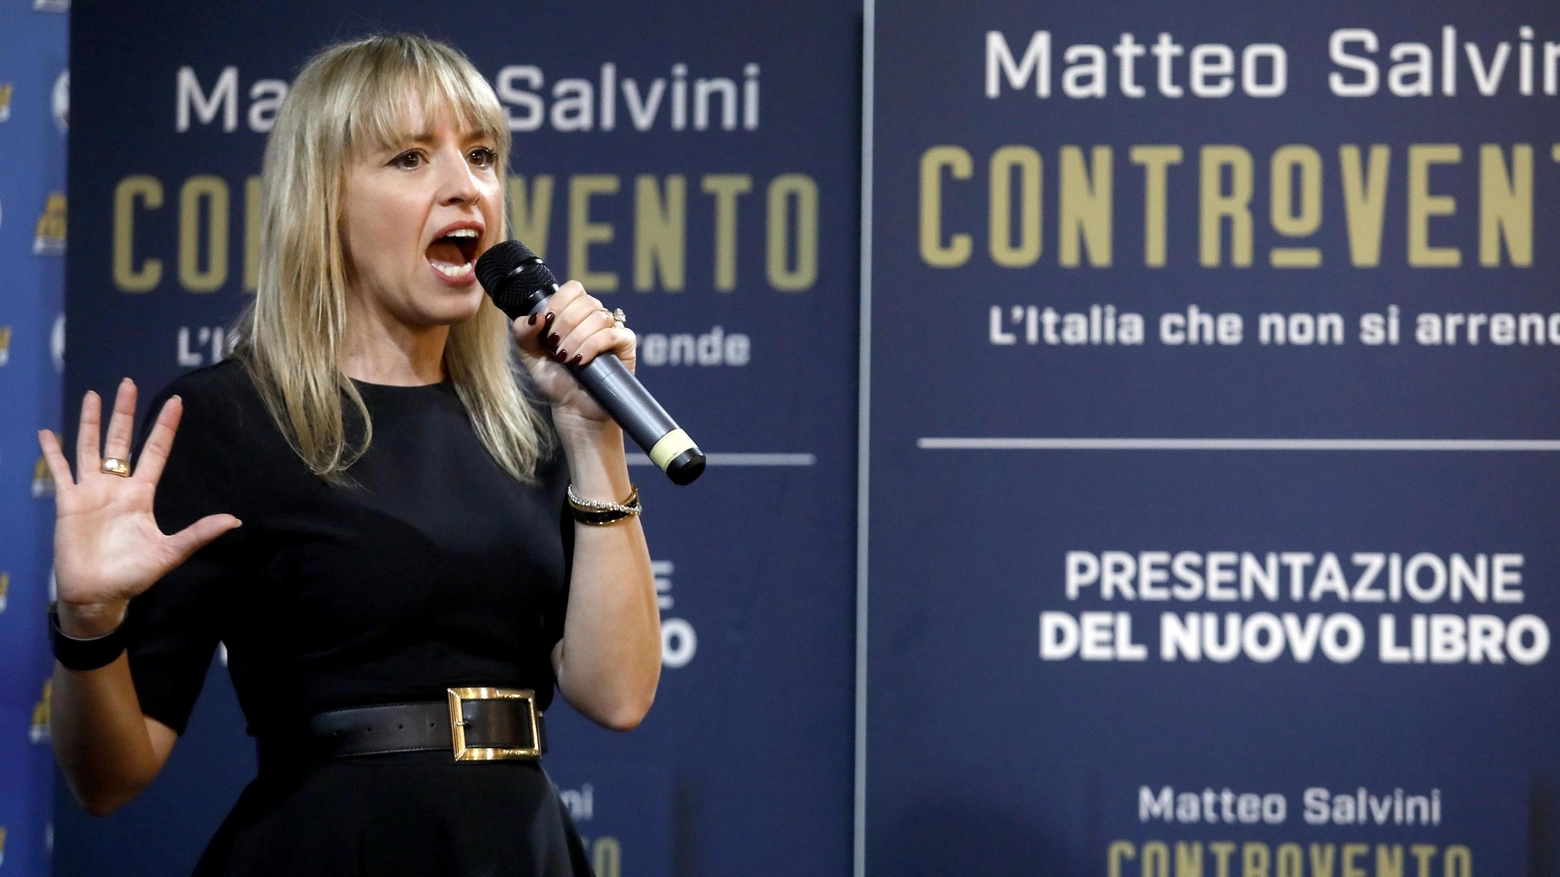 Monza, scintille tra l’eurodeputata e un gruppo di contestatori prima della presentazione del libro di Matteo Salvini. La risposta al coro: “Mi stavo preoccupando dell'assenza delle solite teste di c...o”